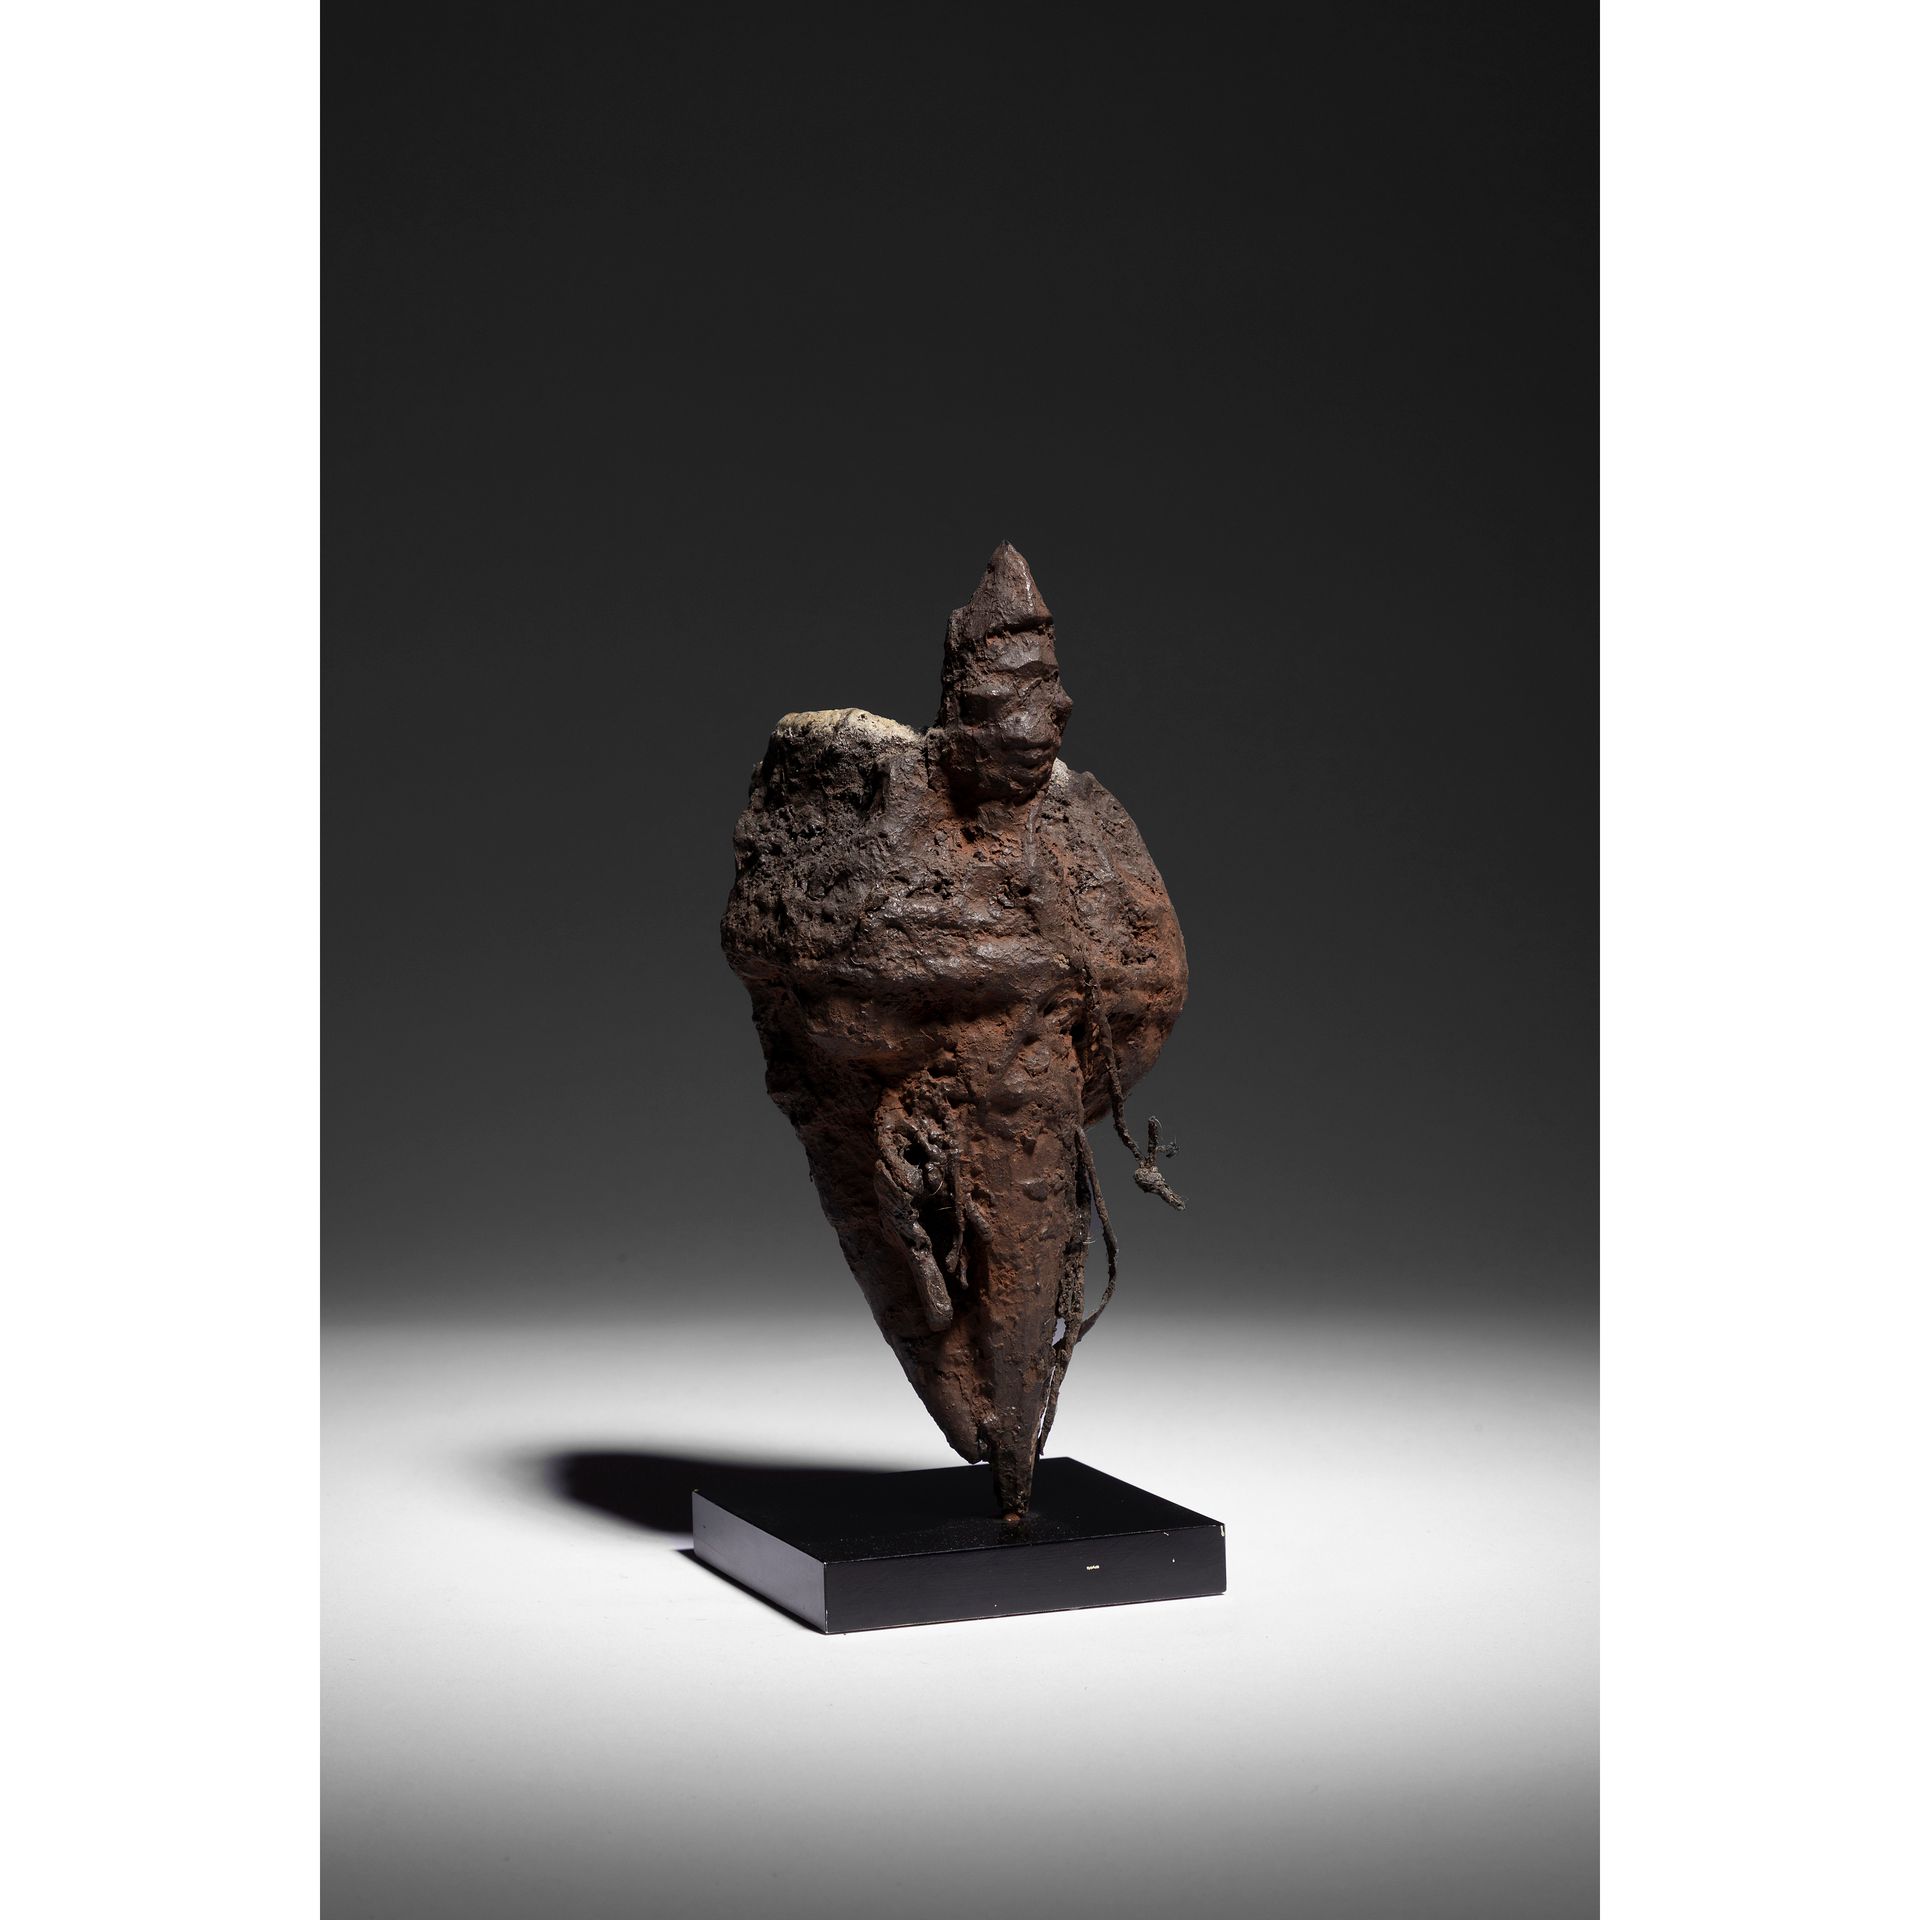 Null 一个伏都教的雕像，bocio，雕刻着一个木桩形状的人物，后面绑着一个头骨和一个装满药品和其他 "罪名 "元素的角。

贝宁，纳戈

木头、绳索、骨头、&hellip;